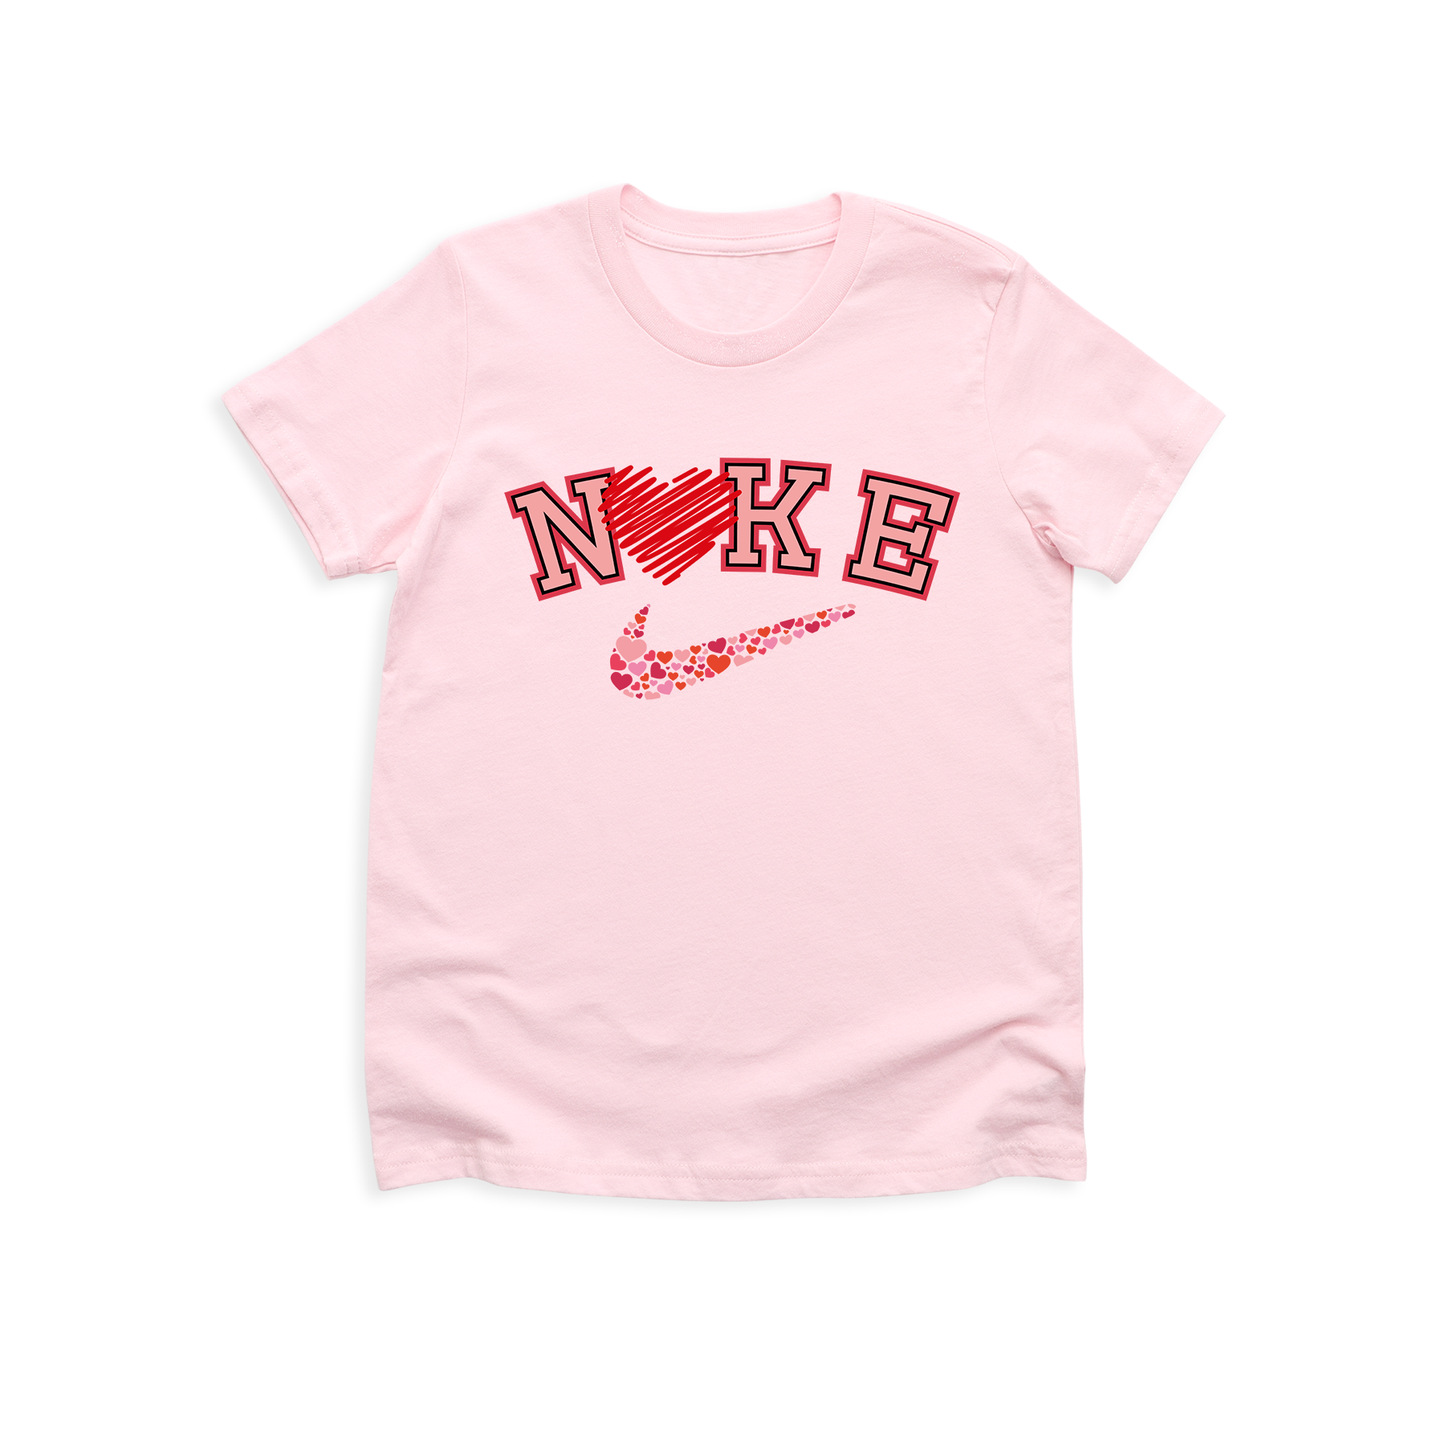 Nike Love T-Shirt